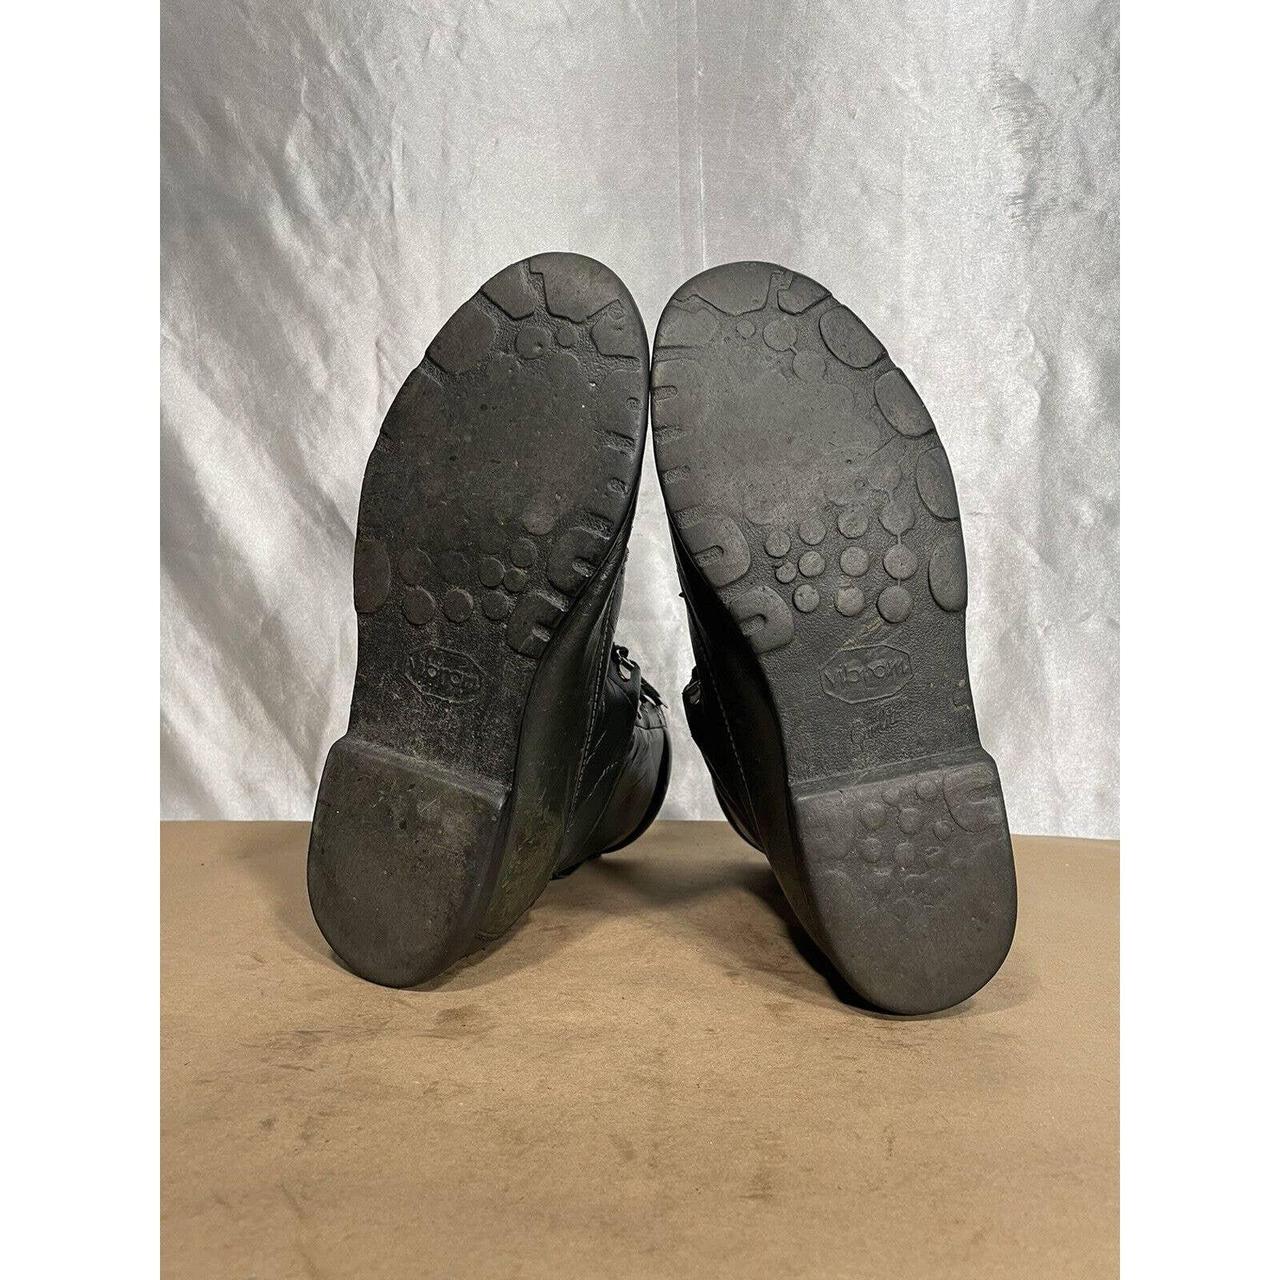 Vintage Cabela’s Gray Leather Moc Toe Work Boots... - Depop